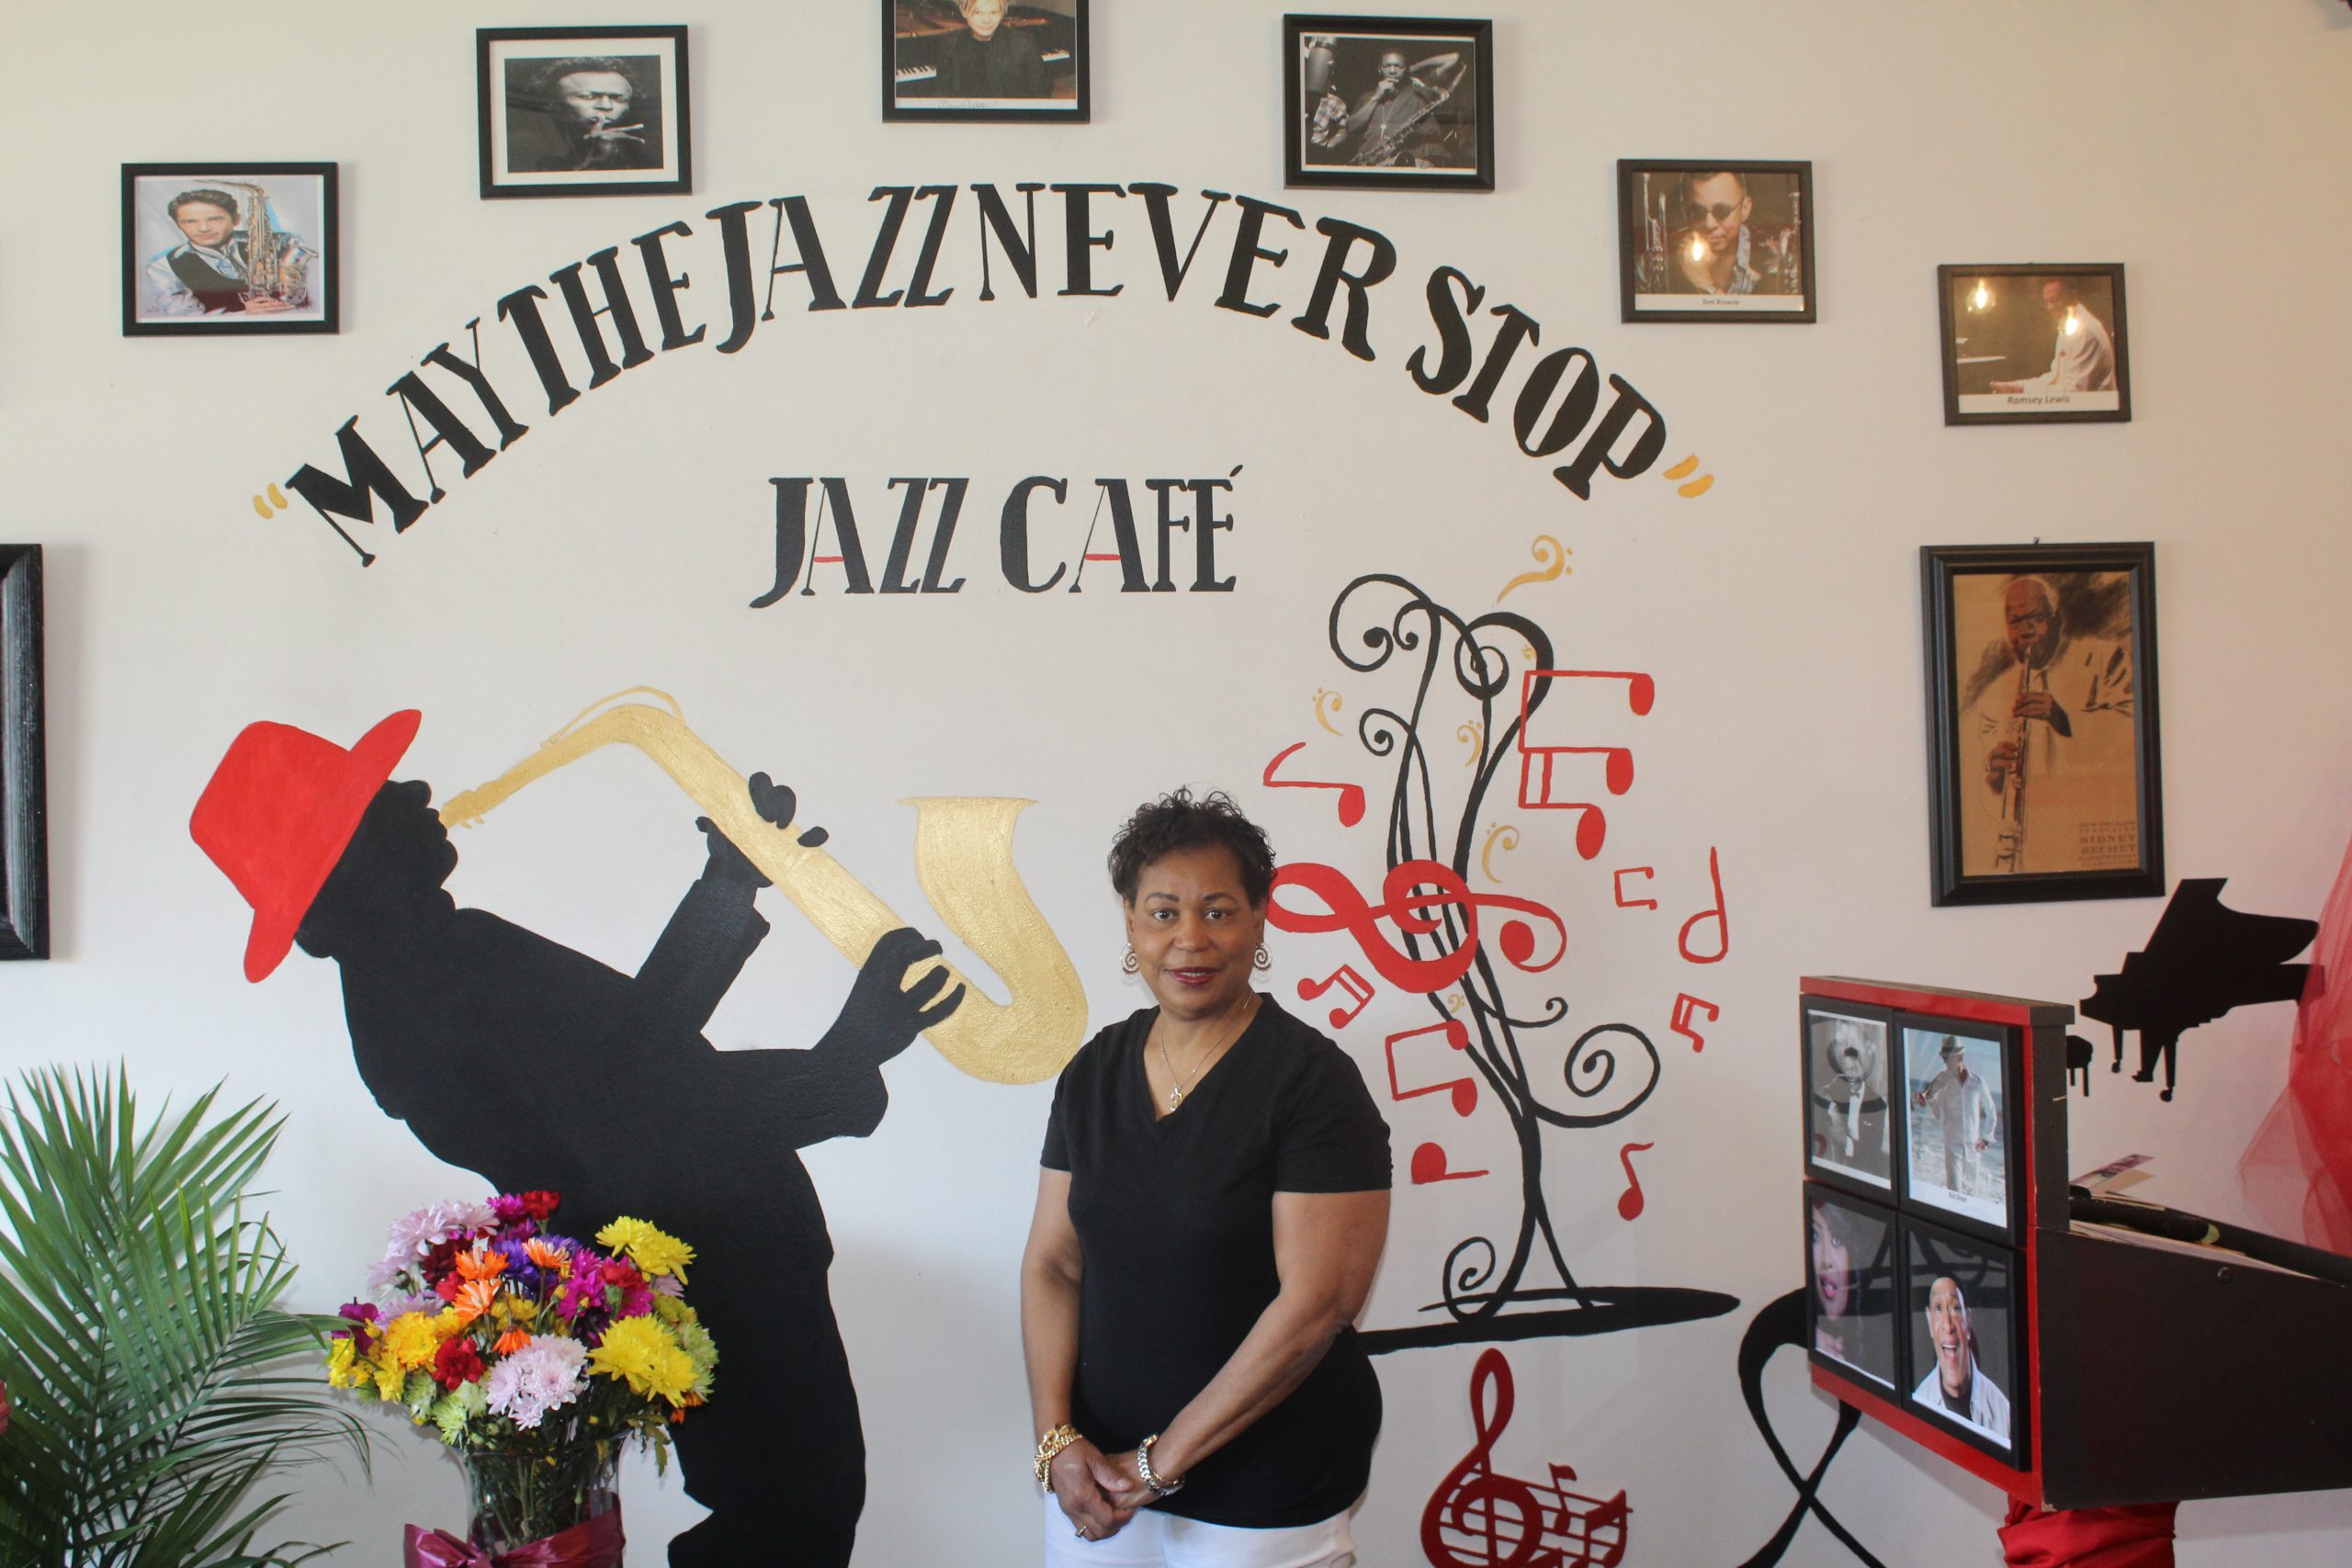 May The Jazz Never Stop Jazz Café